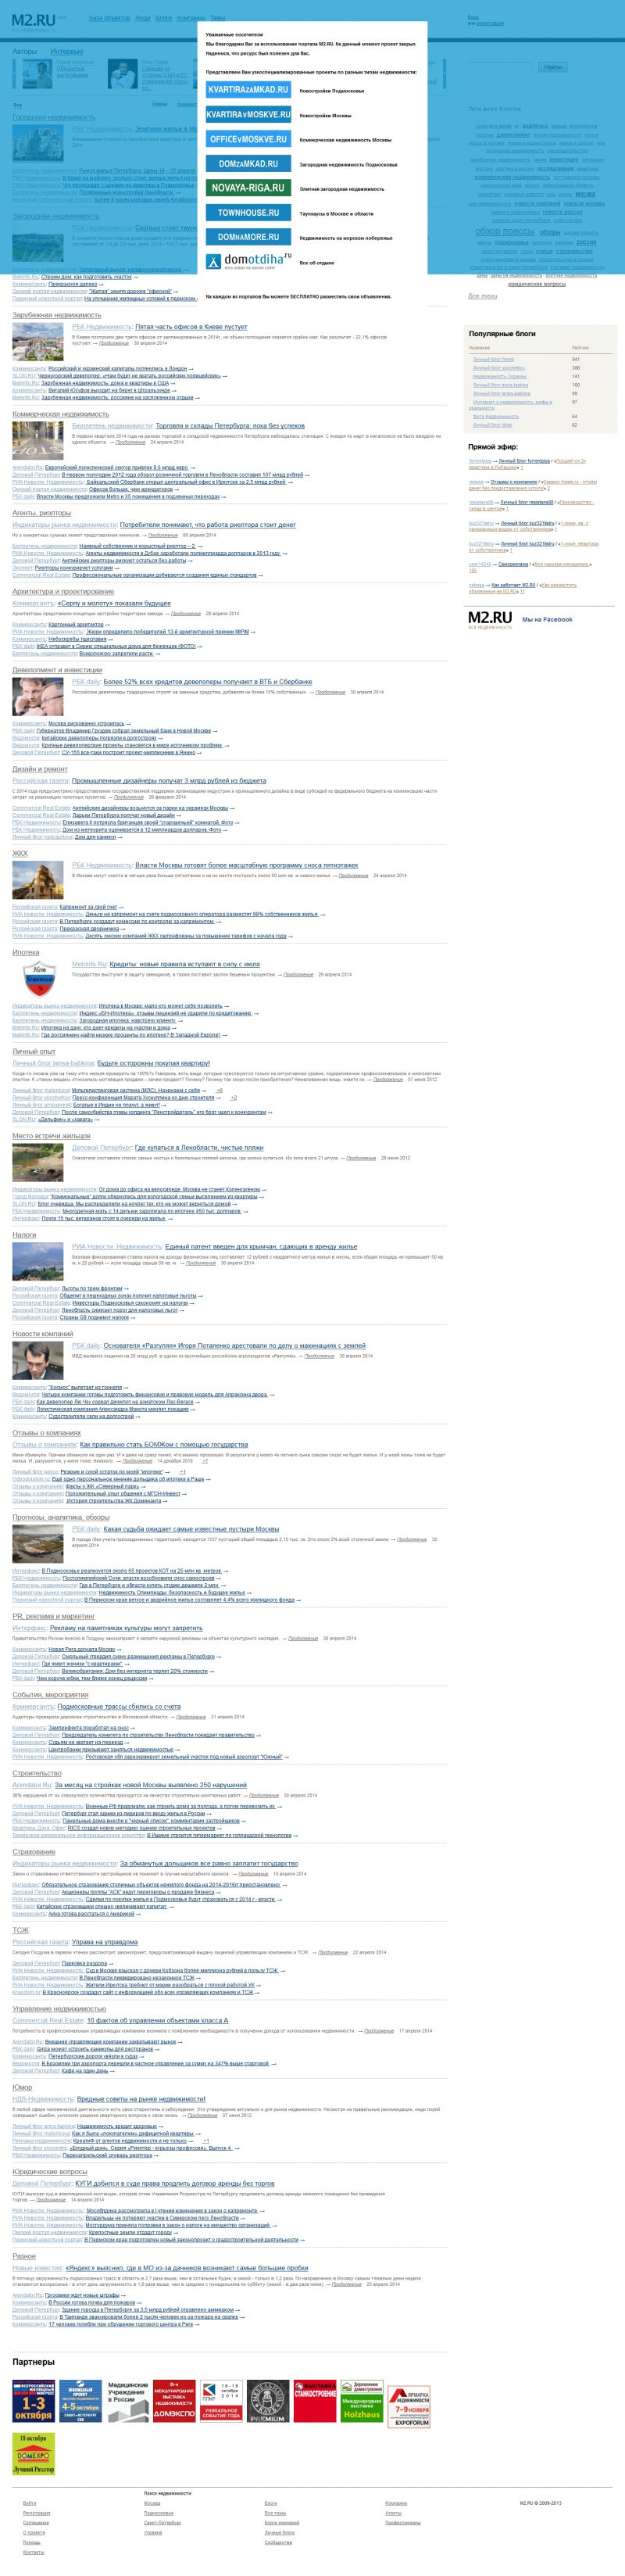 Скриншот сайта «m2.ru» от 28.03.2015 года